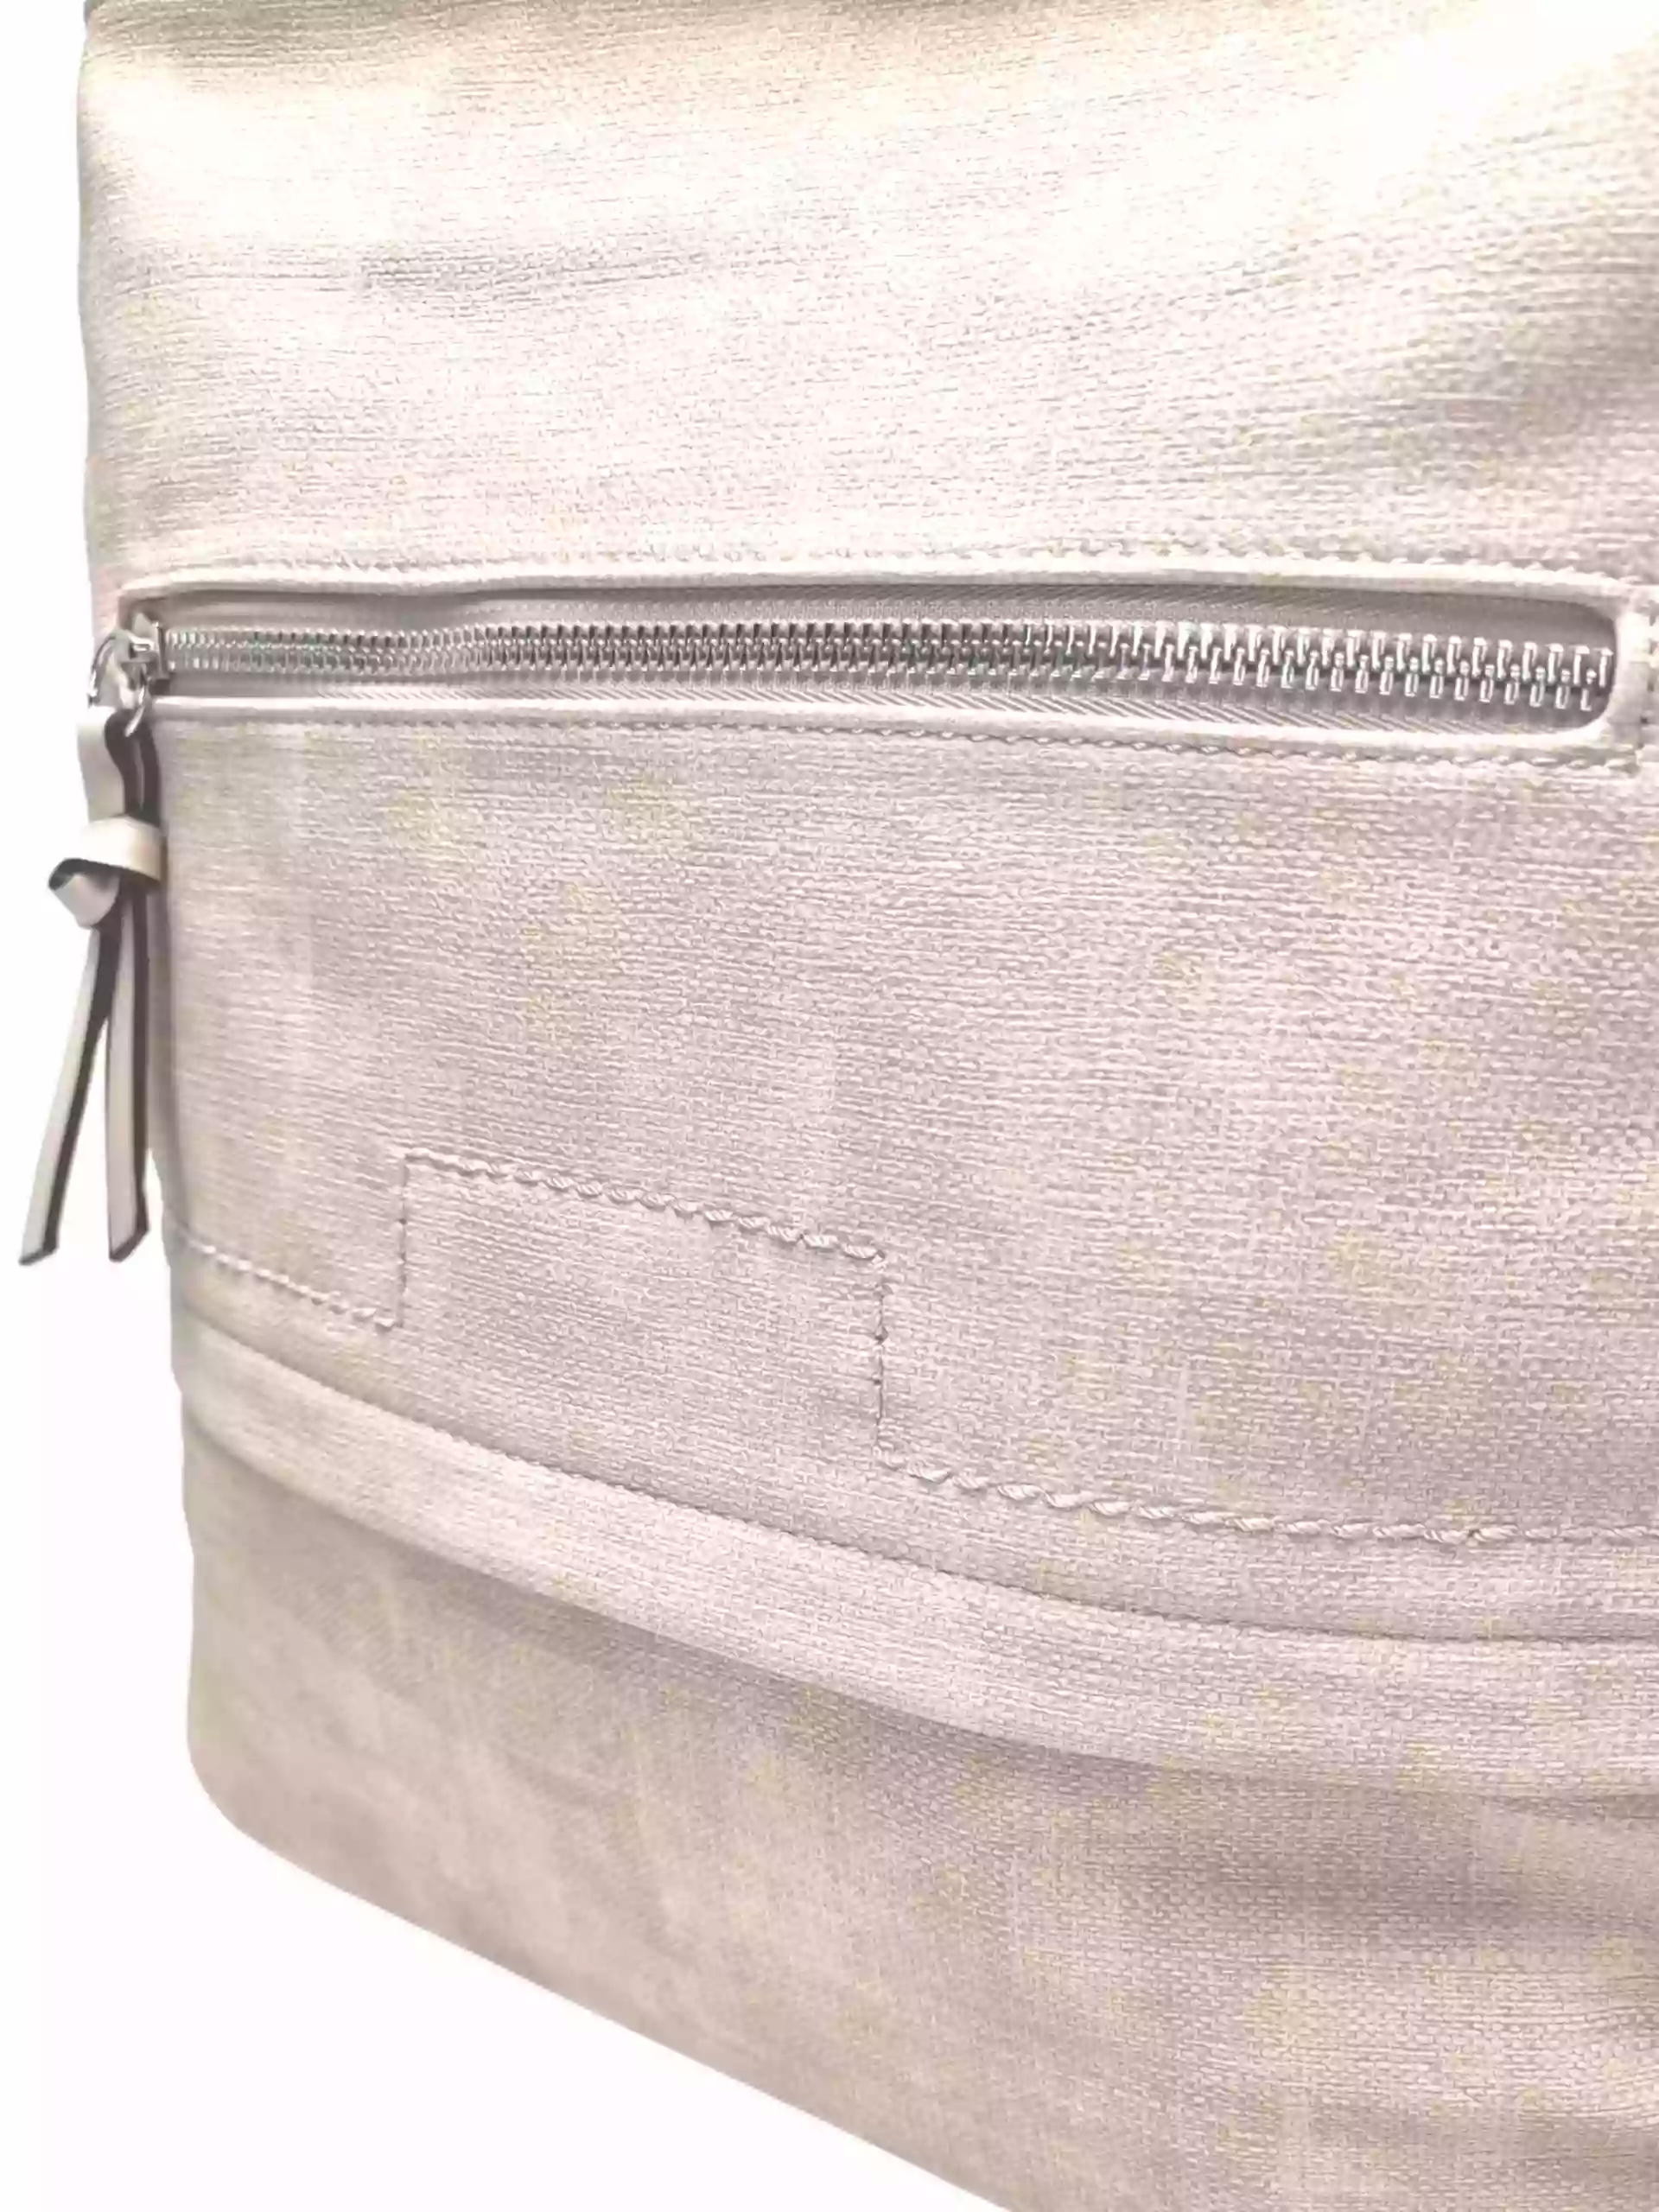 Střední béžový kabelko-batoh 2v1 s praktickou kapsou, Tapple, H190062, detail kabelko-batohu